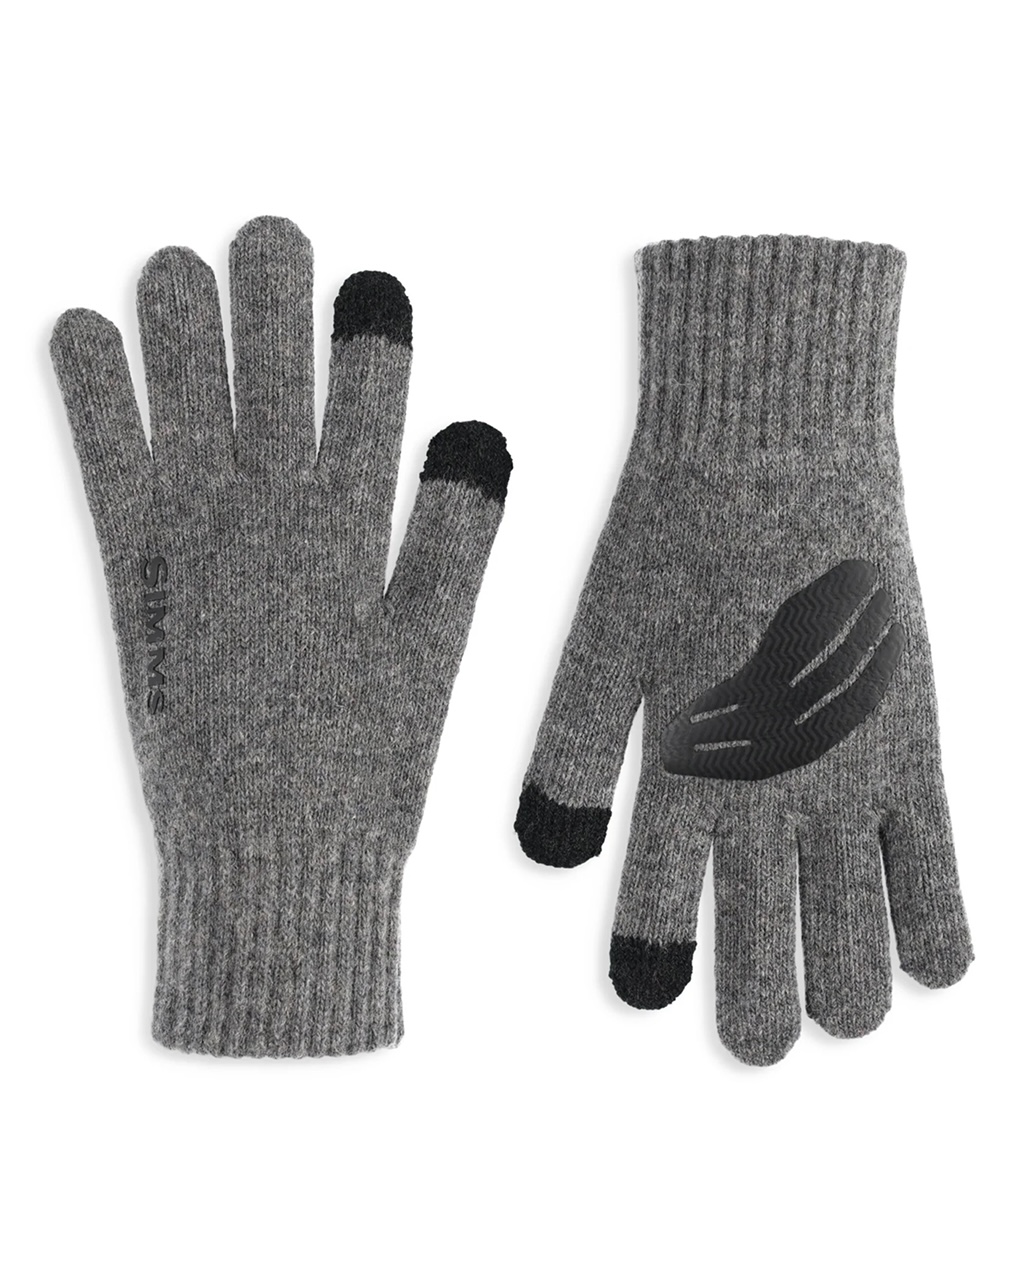 Wool Full Finger Glove